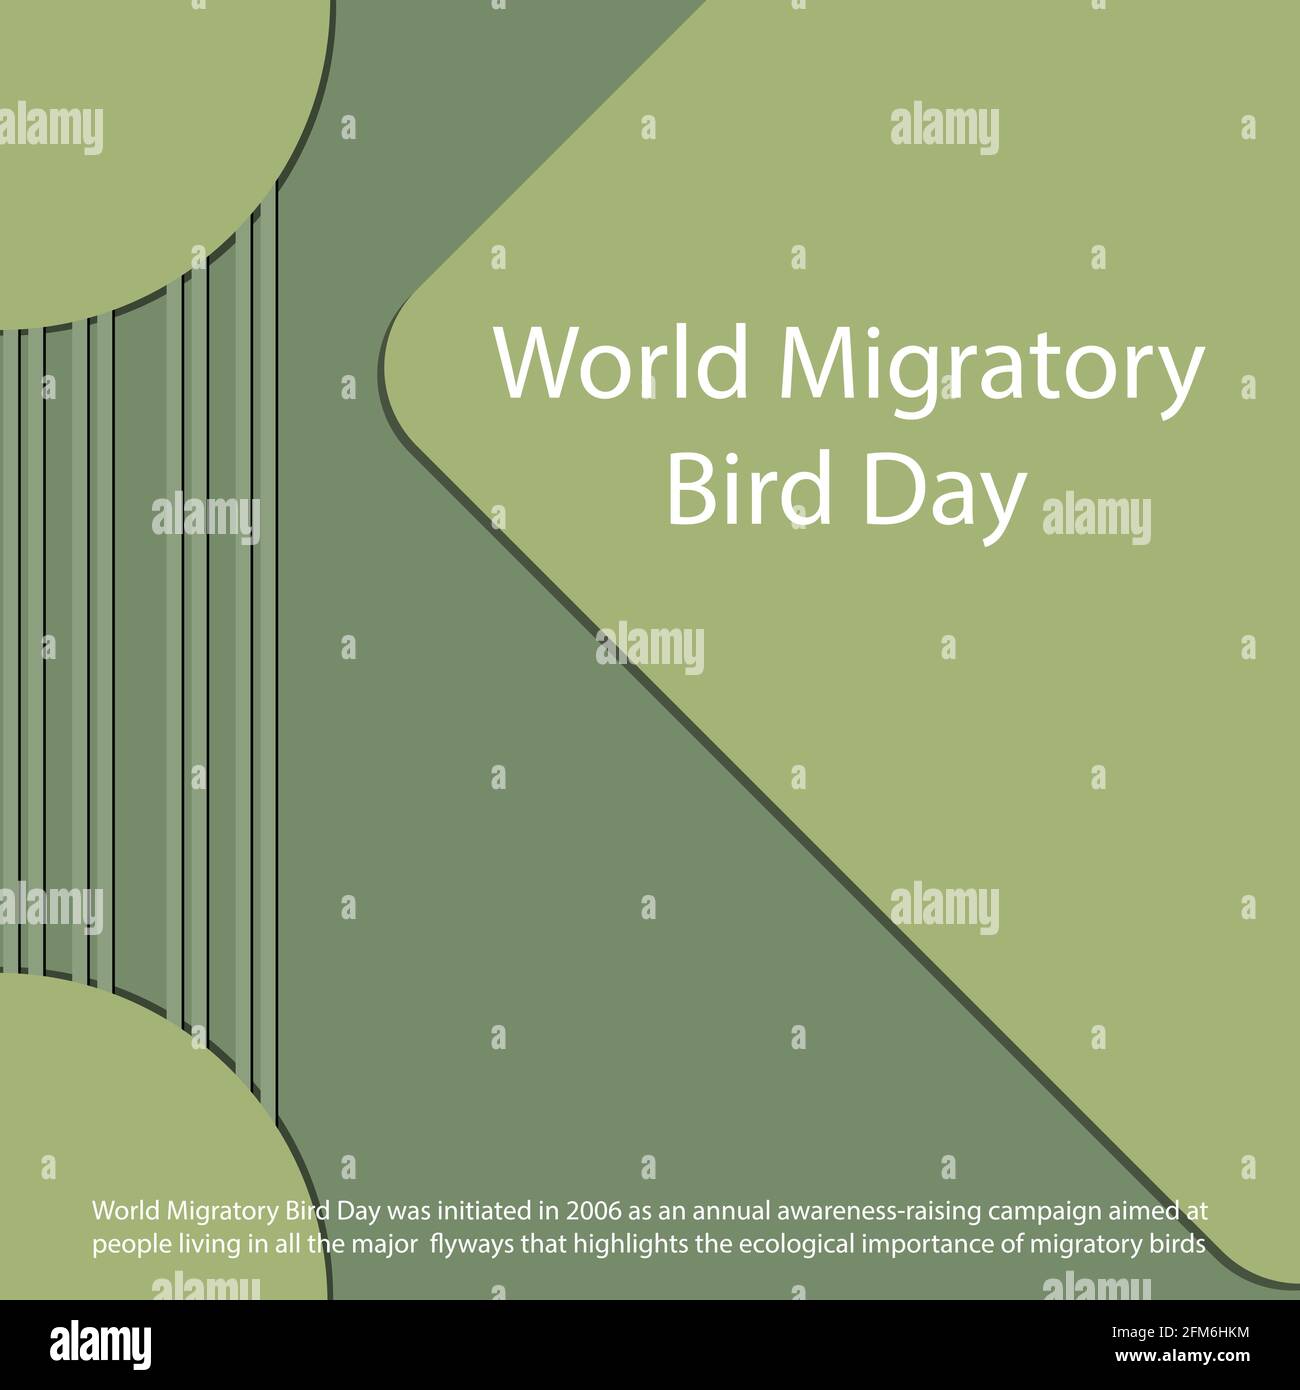 Der Weltwanderungsvogeltag wurde 2006 als ein Jährliche Sensibilisierungskampagne für Menschen, die in allen Bereichen leben Wichtige Flyways, die Highlights sind Stock Vektor